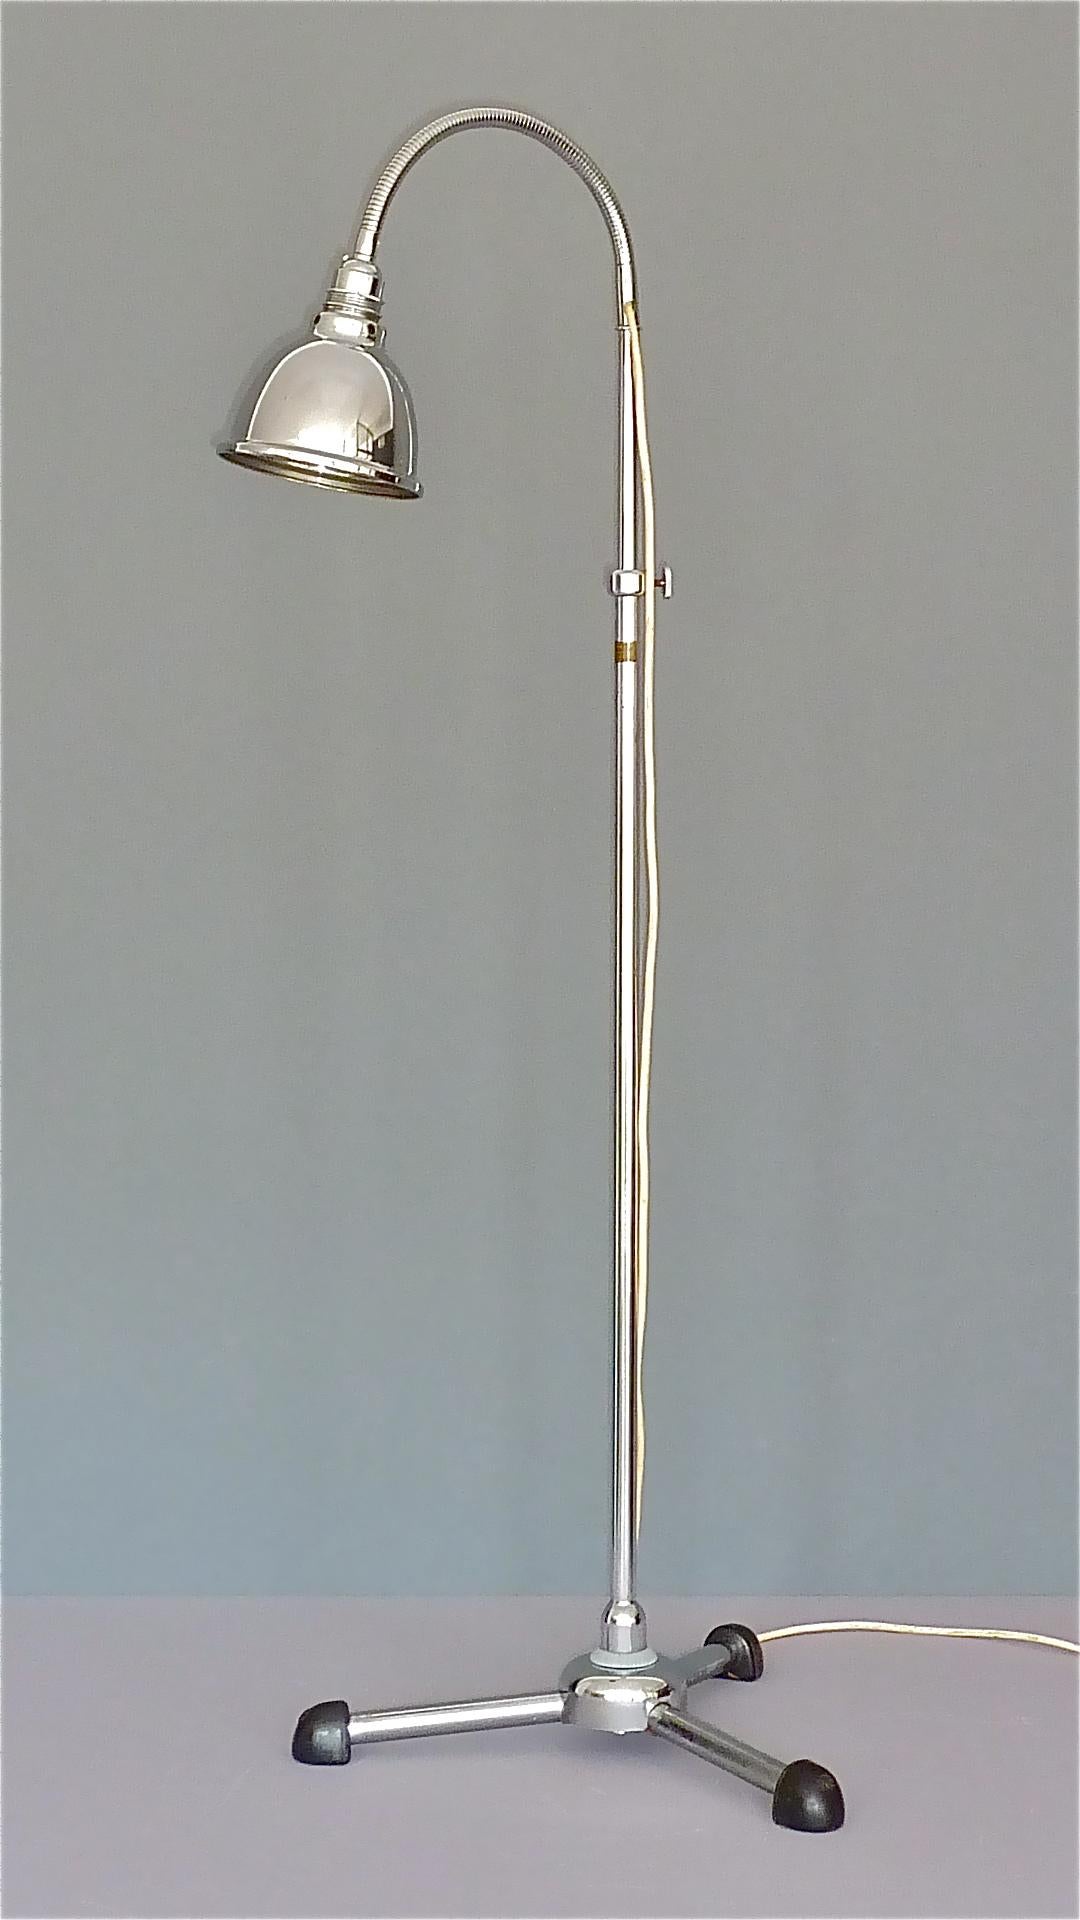 Christian Dell Bauhaus Chrome Metal Floor Standard Lamp 1930s Gooseneck Art Deco For Sale 10